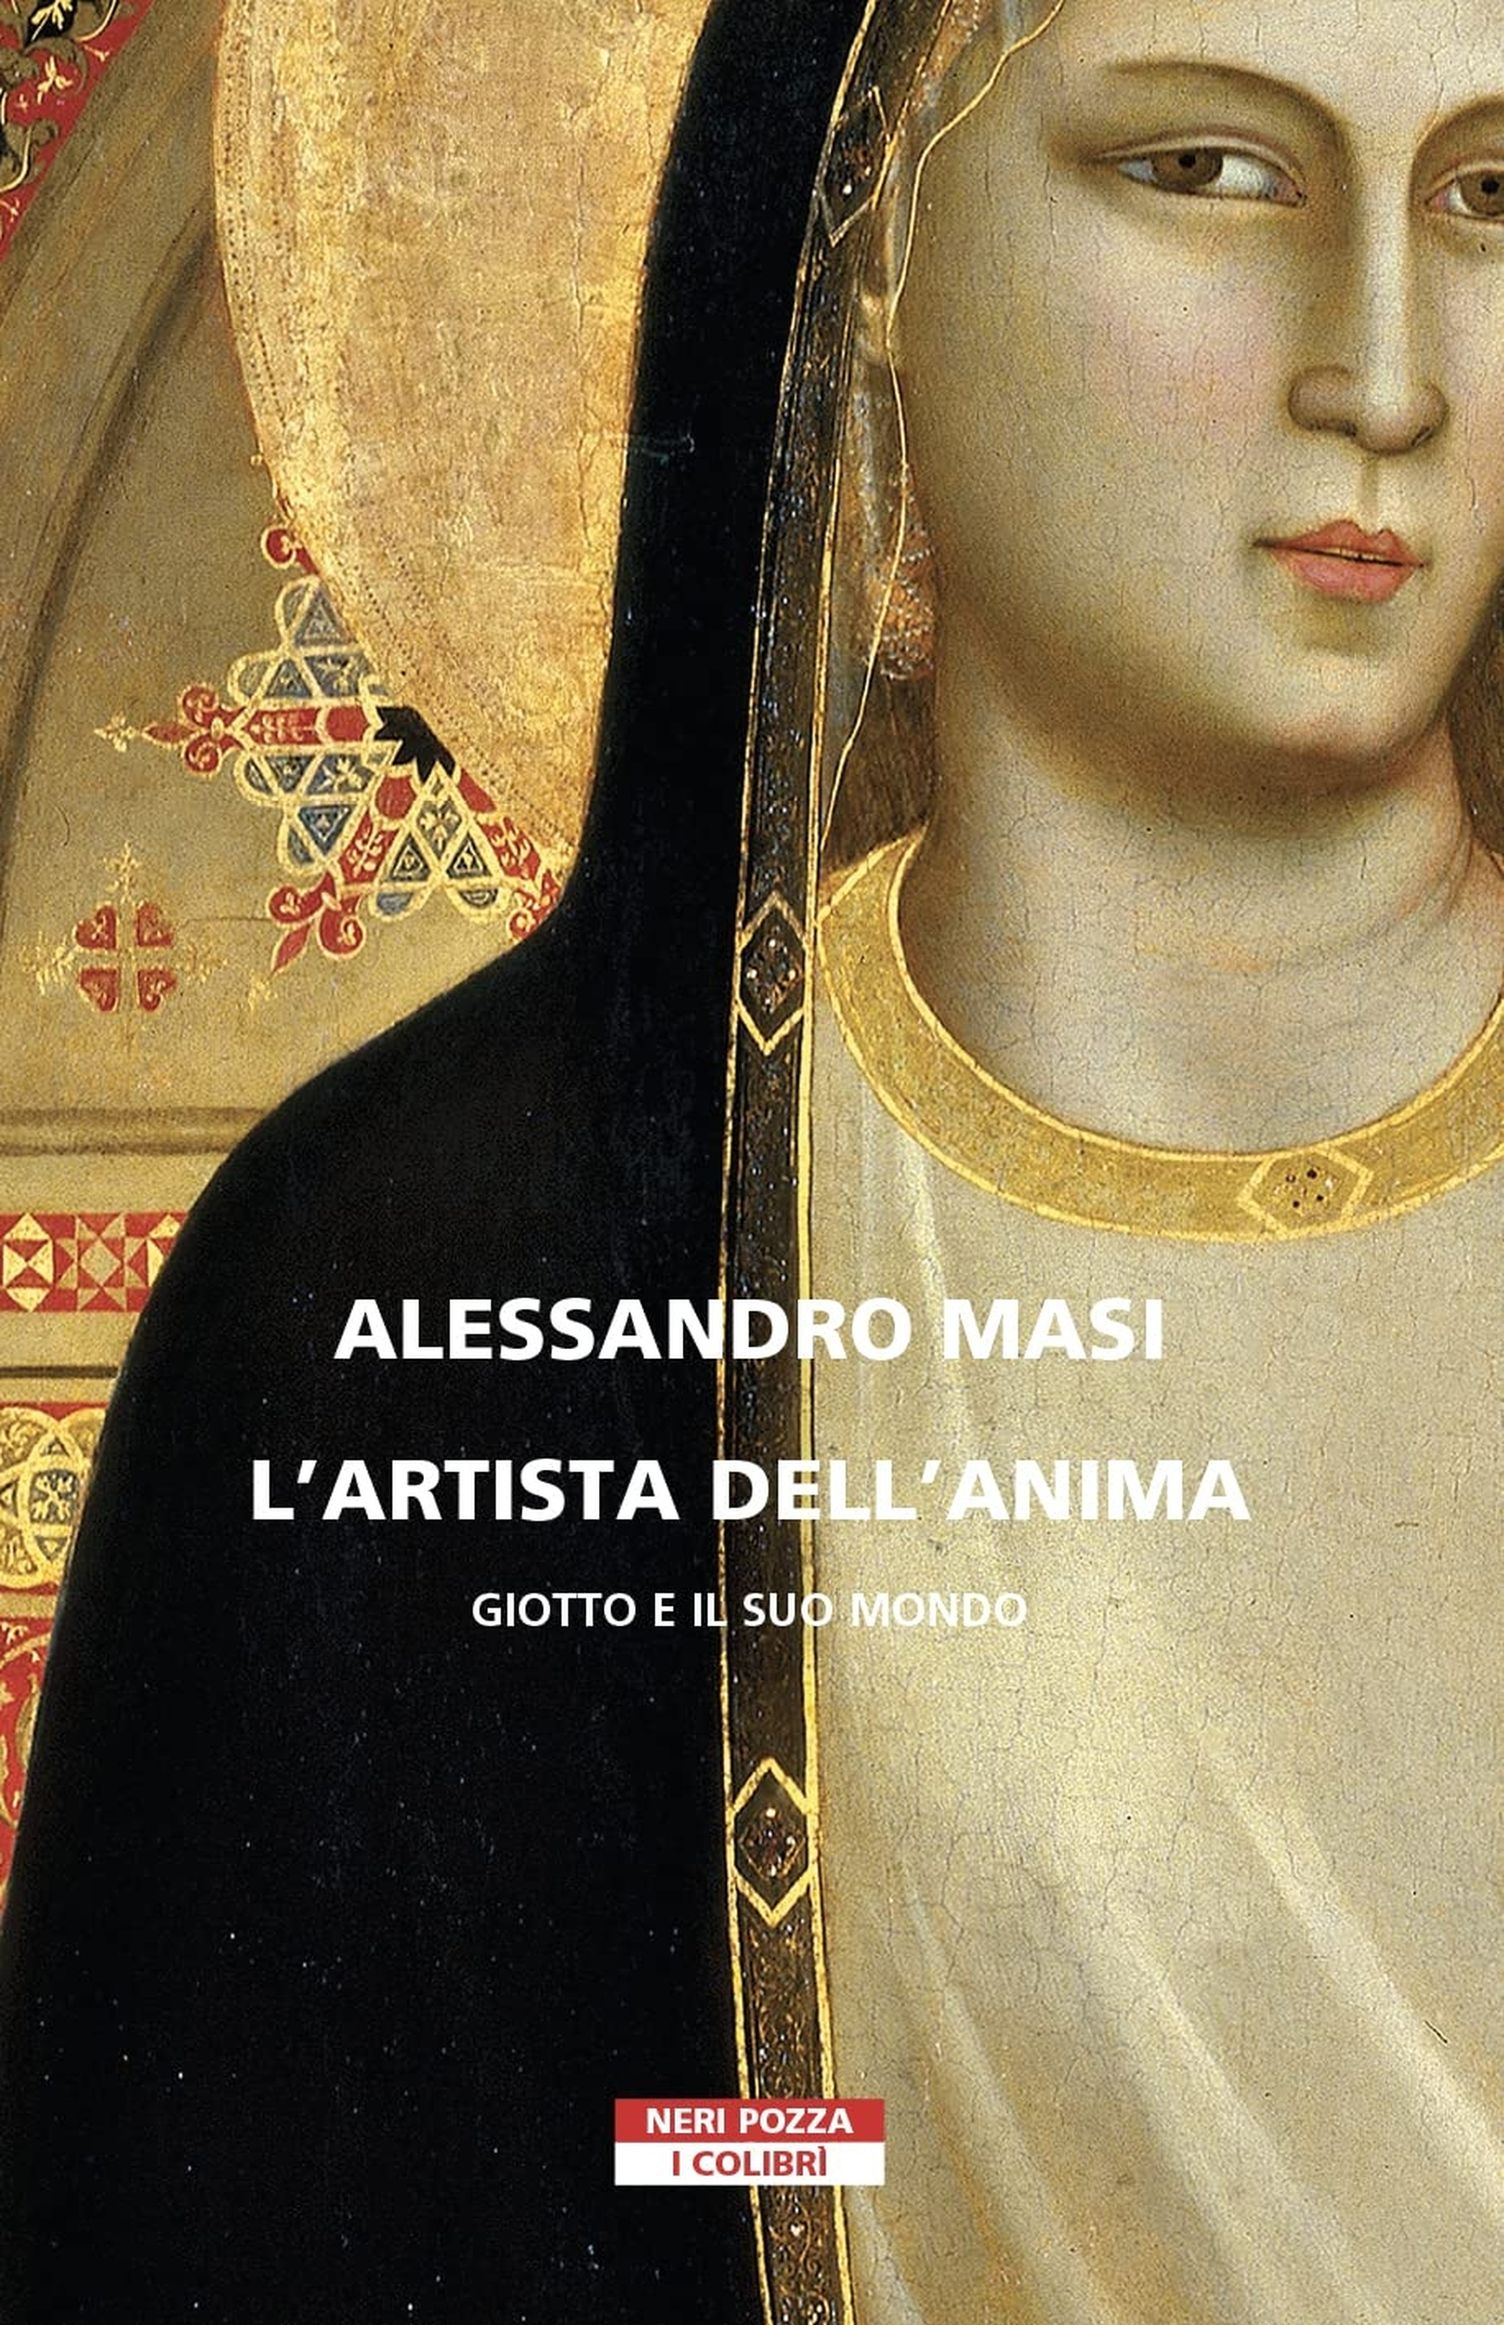 Alessandro Masi – L'artista dell'anima (Neri Pozza, Vicenza 2022)